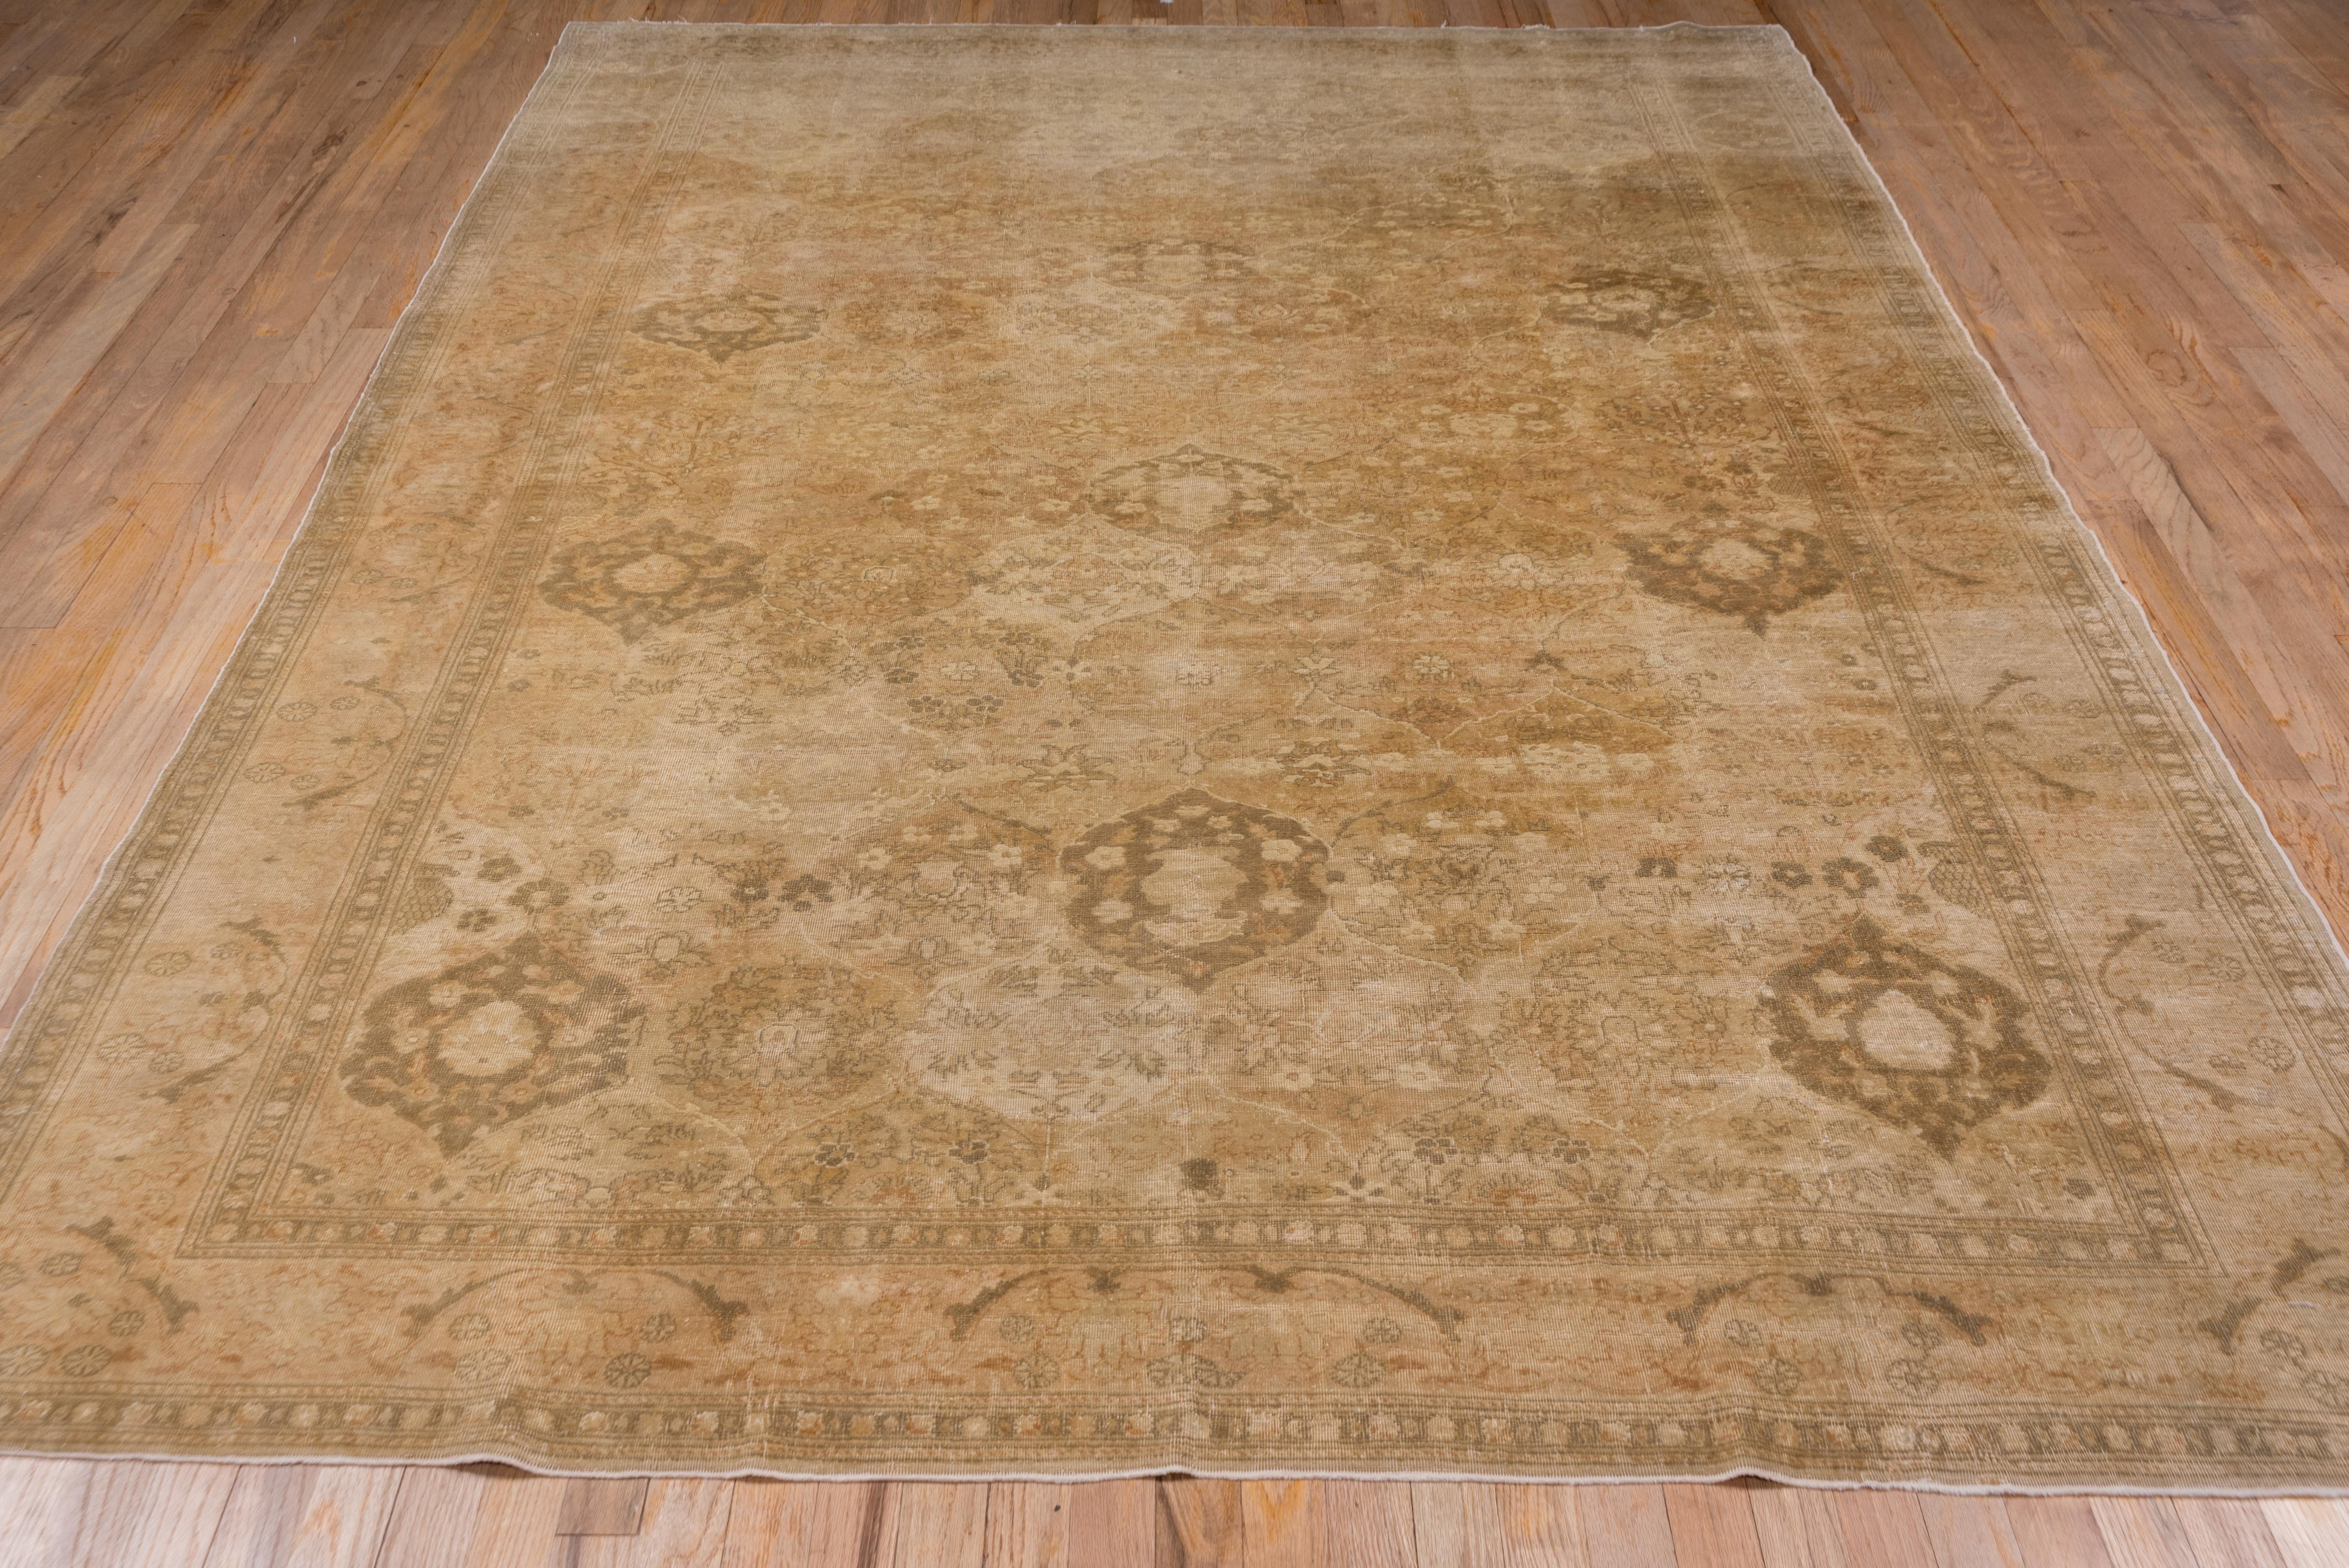 Other Antique Sivas Carpet For Sale